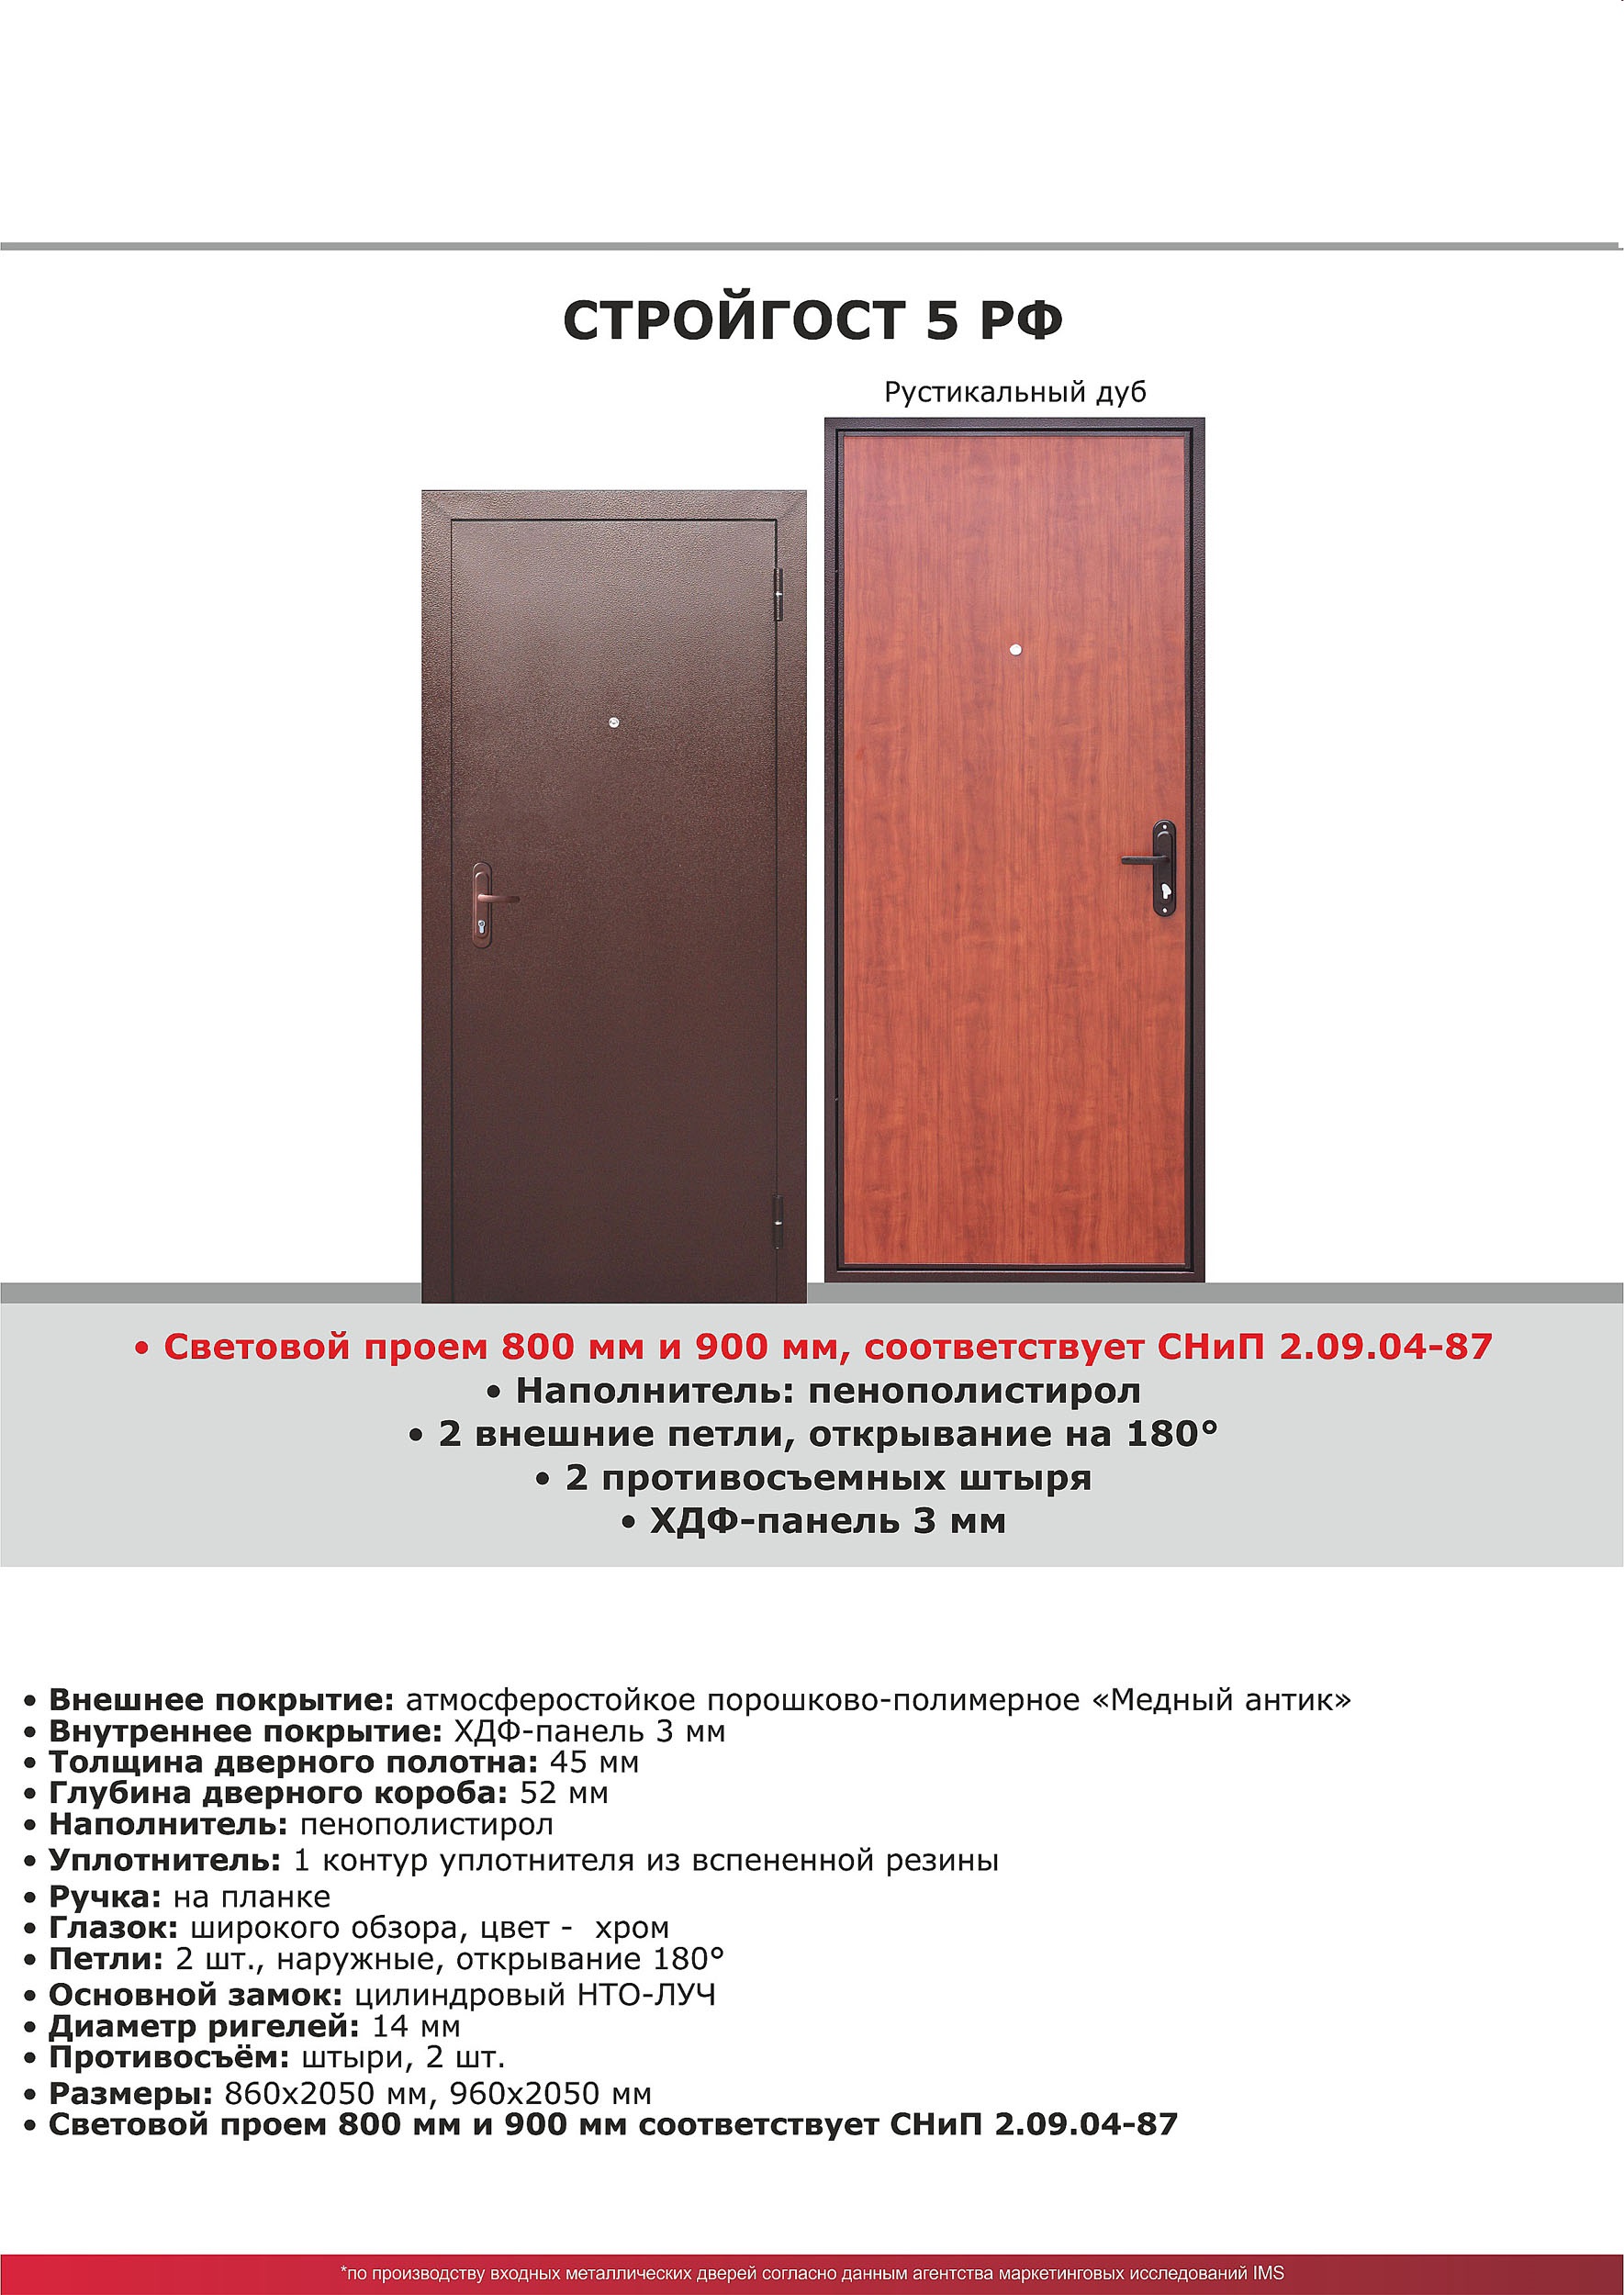 Входная дверь Стройгост 5 РФ Рустикальный дуб 2050*960  прав УТ000017818